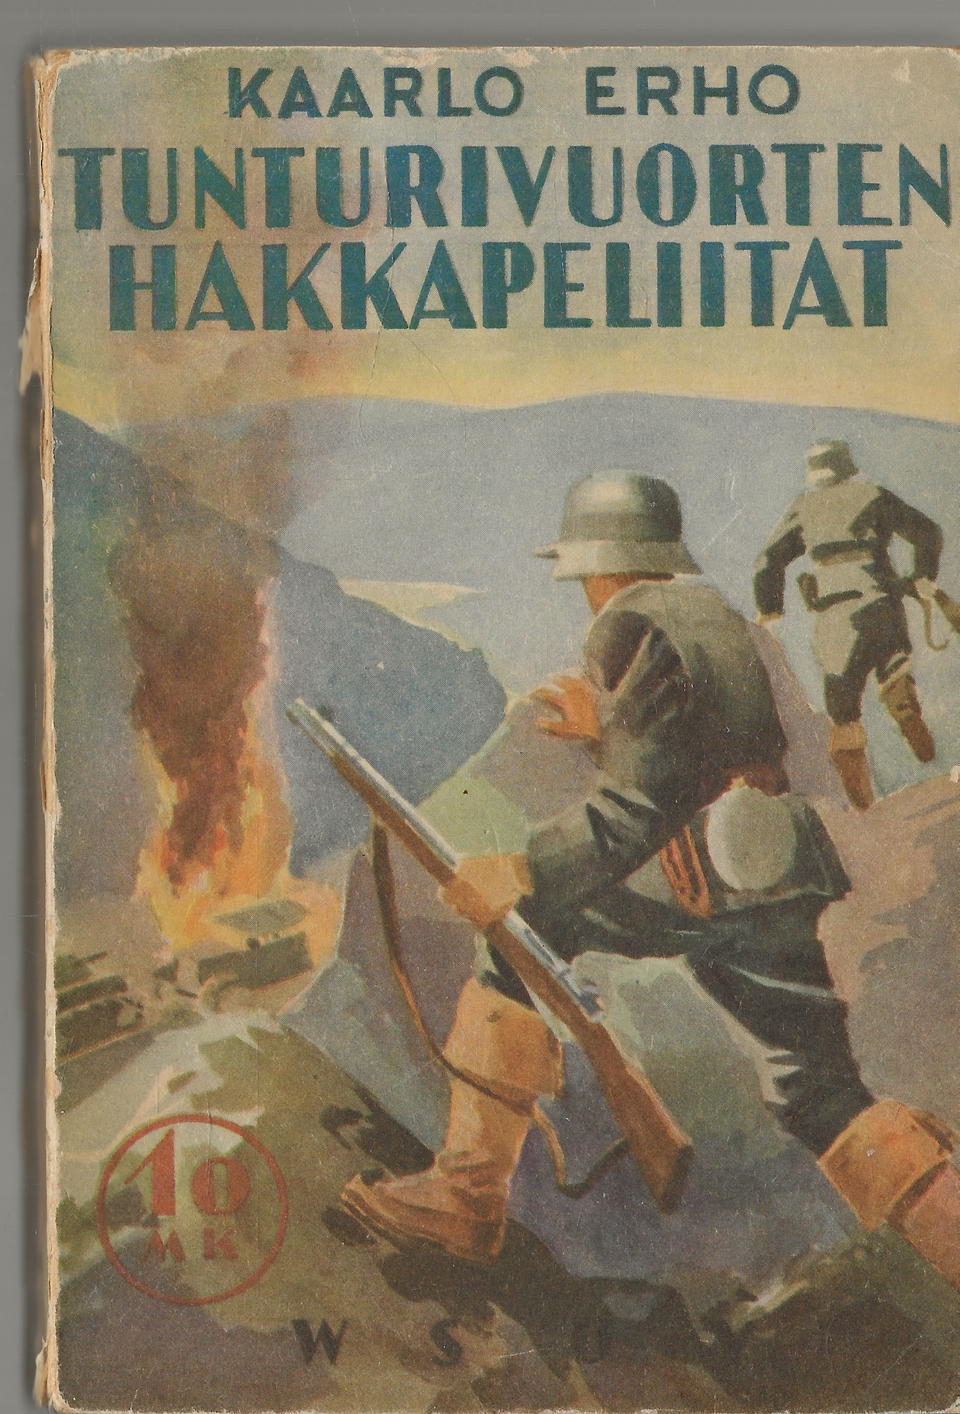 Kaarlo Erho: Tunturivuorten hakkapelitaat. WSOY 1942